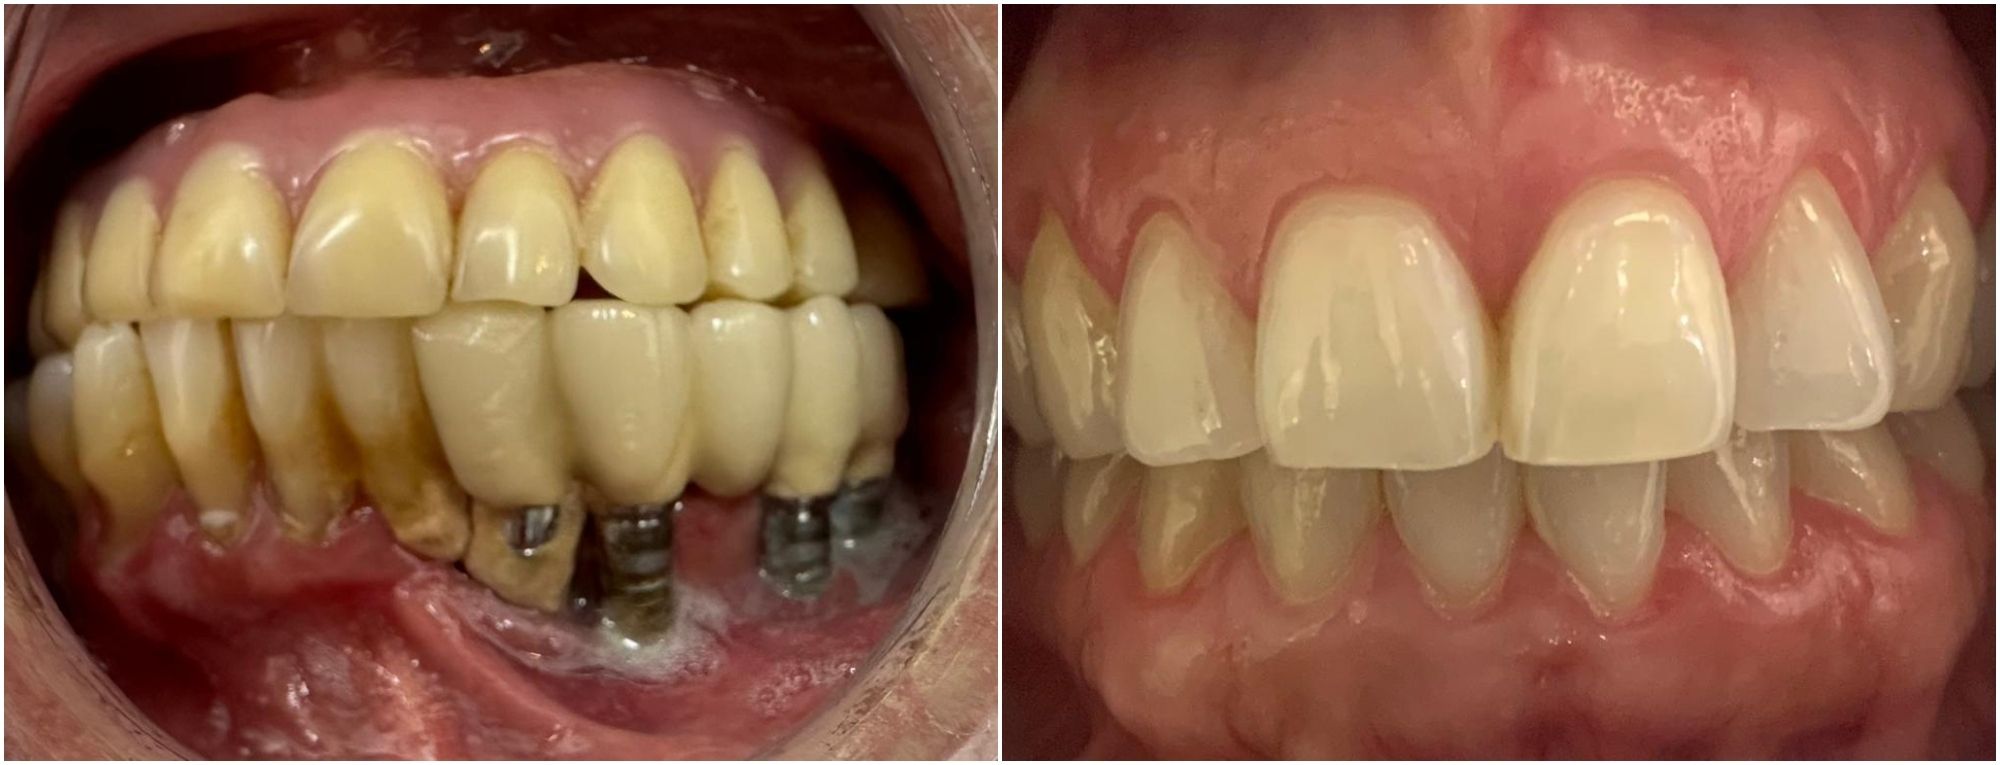 Dentadura antes y después de implantes dentales